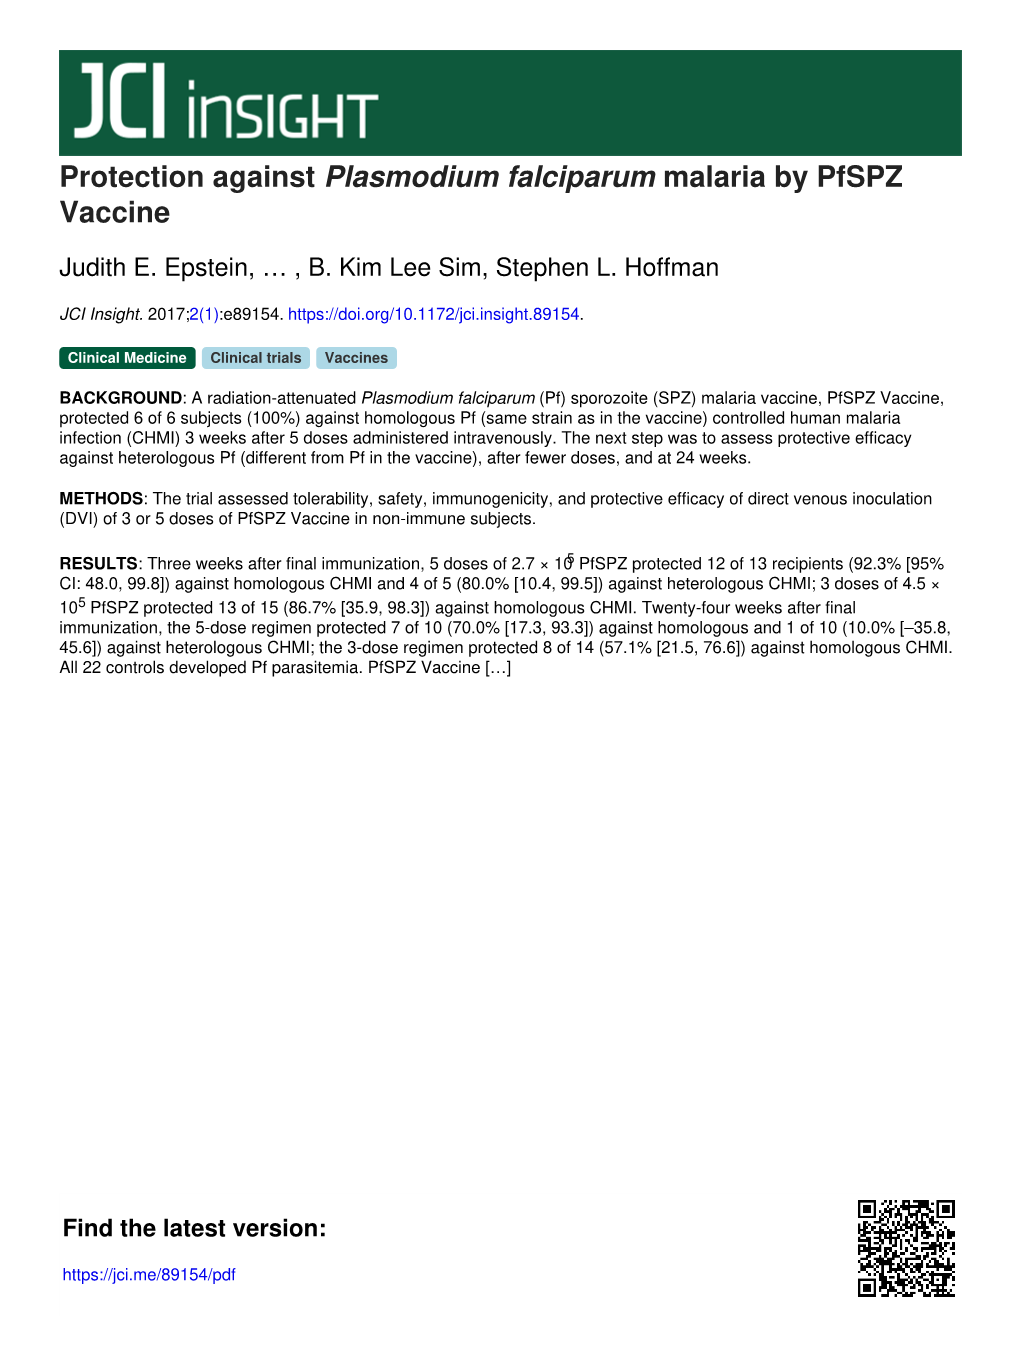 Protection Against Plasmodium Falciparum Malaria by Pfspz Vaccine